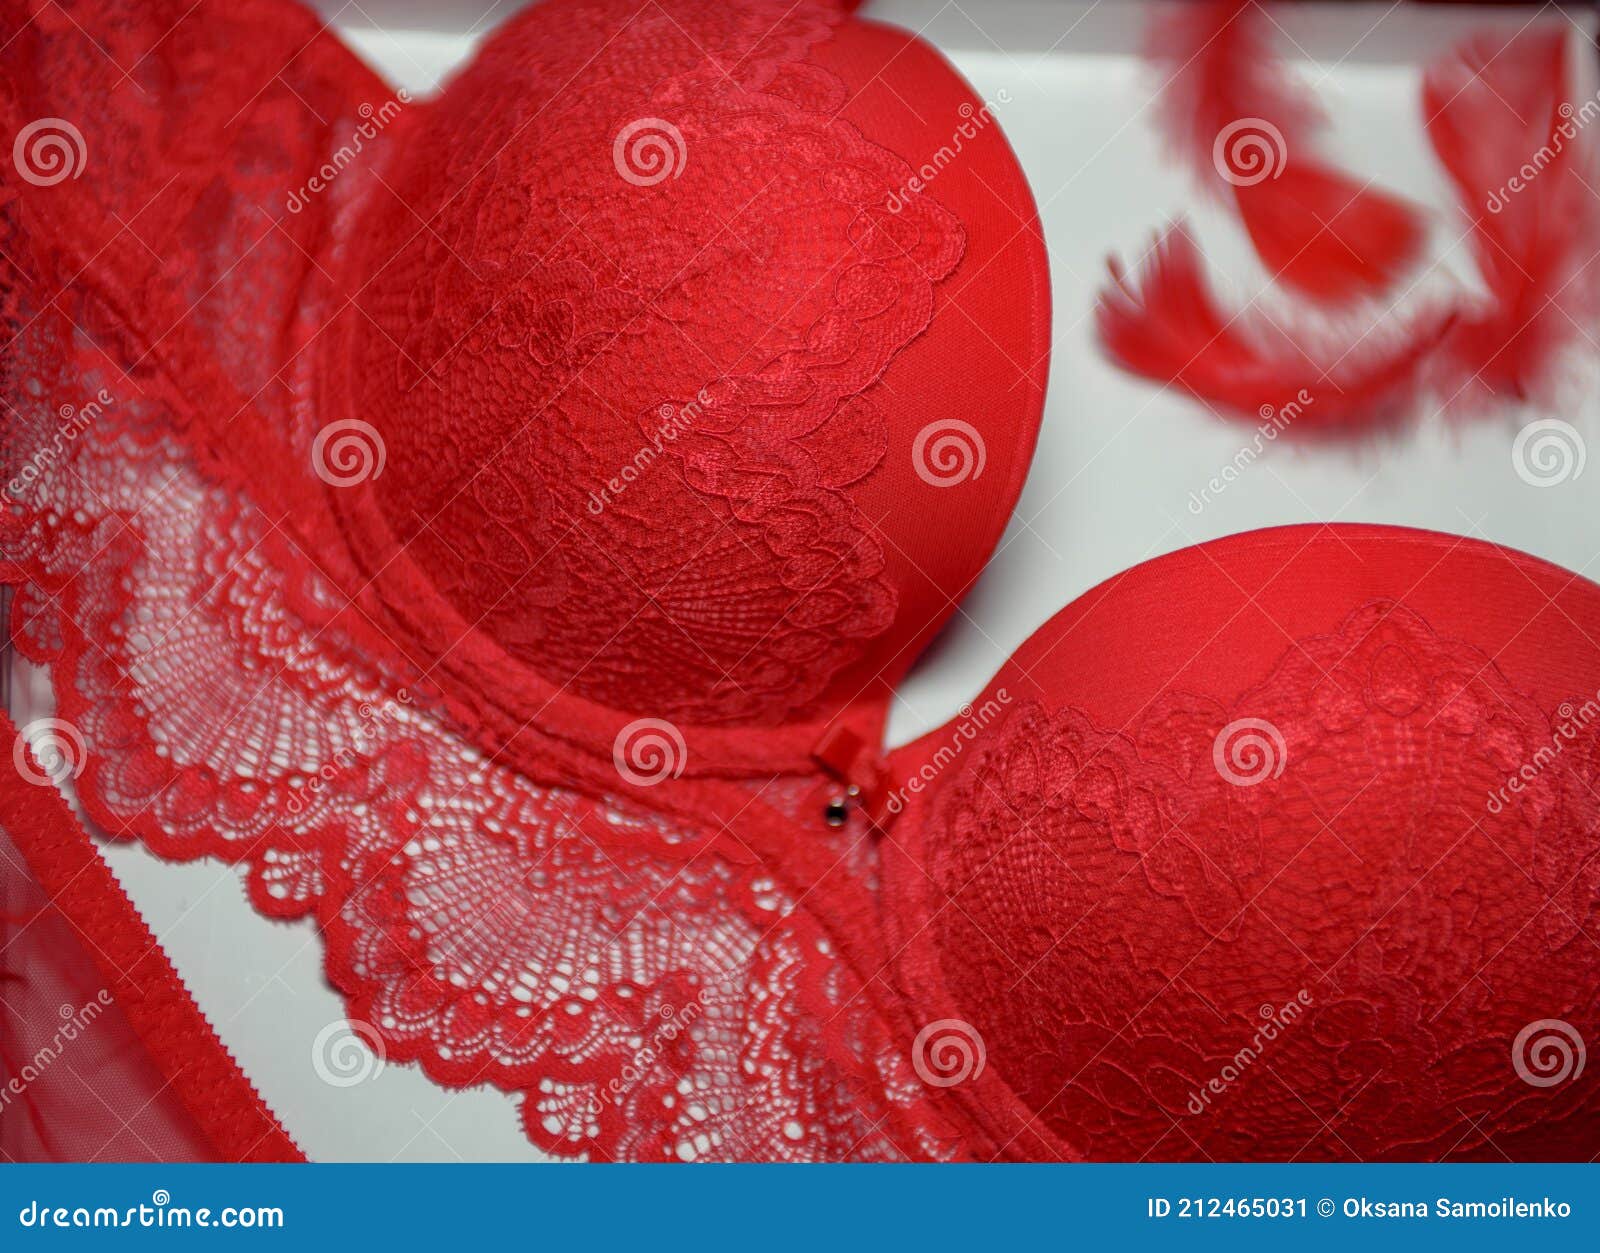 Lencería Sexy De Color Rojo Sobre Fondo Blanco. Ropa Interior Para Mujeres. Ropa Interior De Encaje Imagen de - Imagen de escarlata, blanco: 212465031